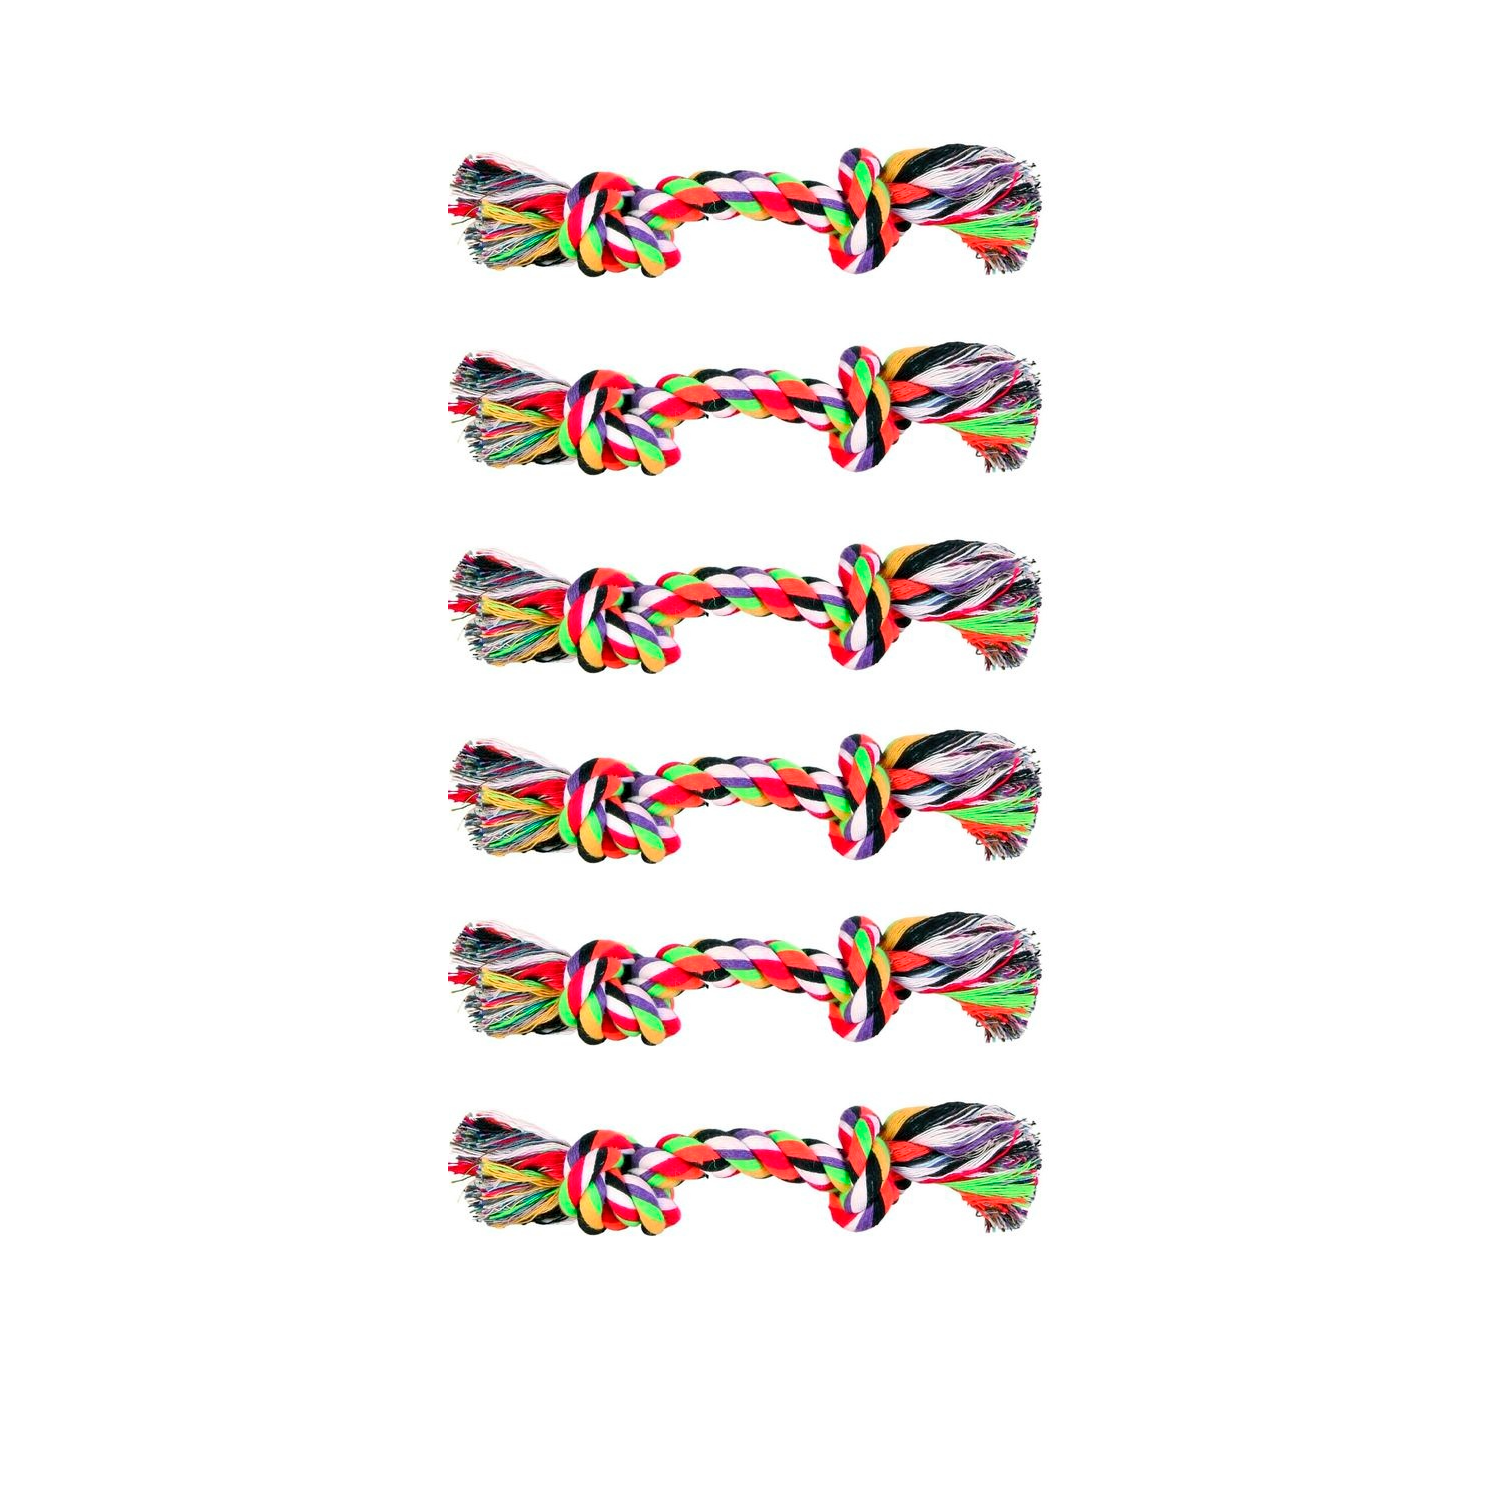 Игрушка для собак TRIXIE Веревка с 2-мя узлами, цветная, хлопок 25г, 15см, 6 шт